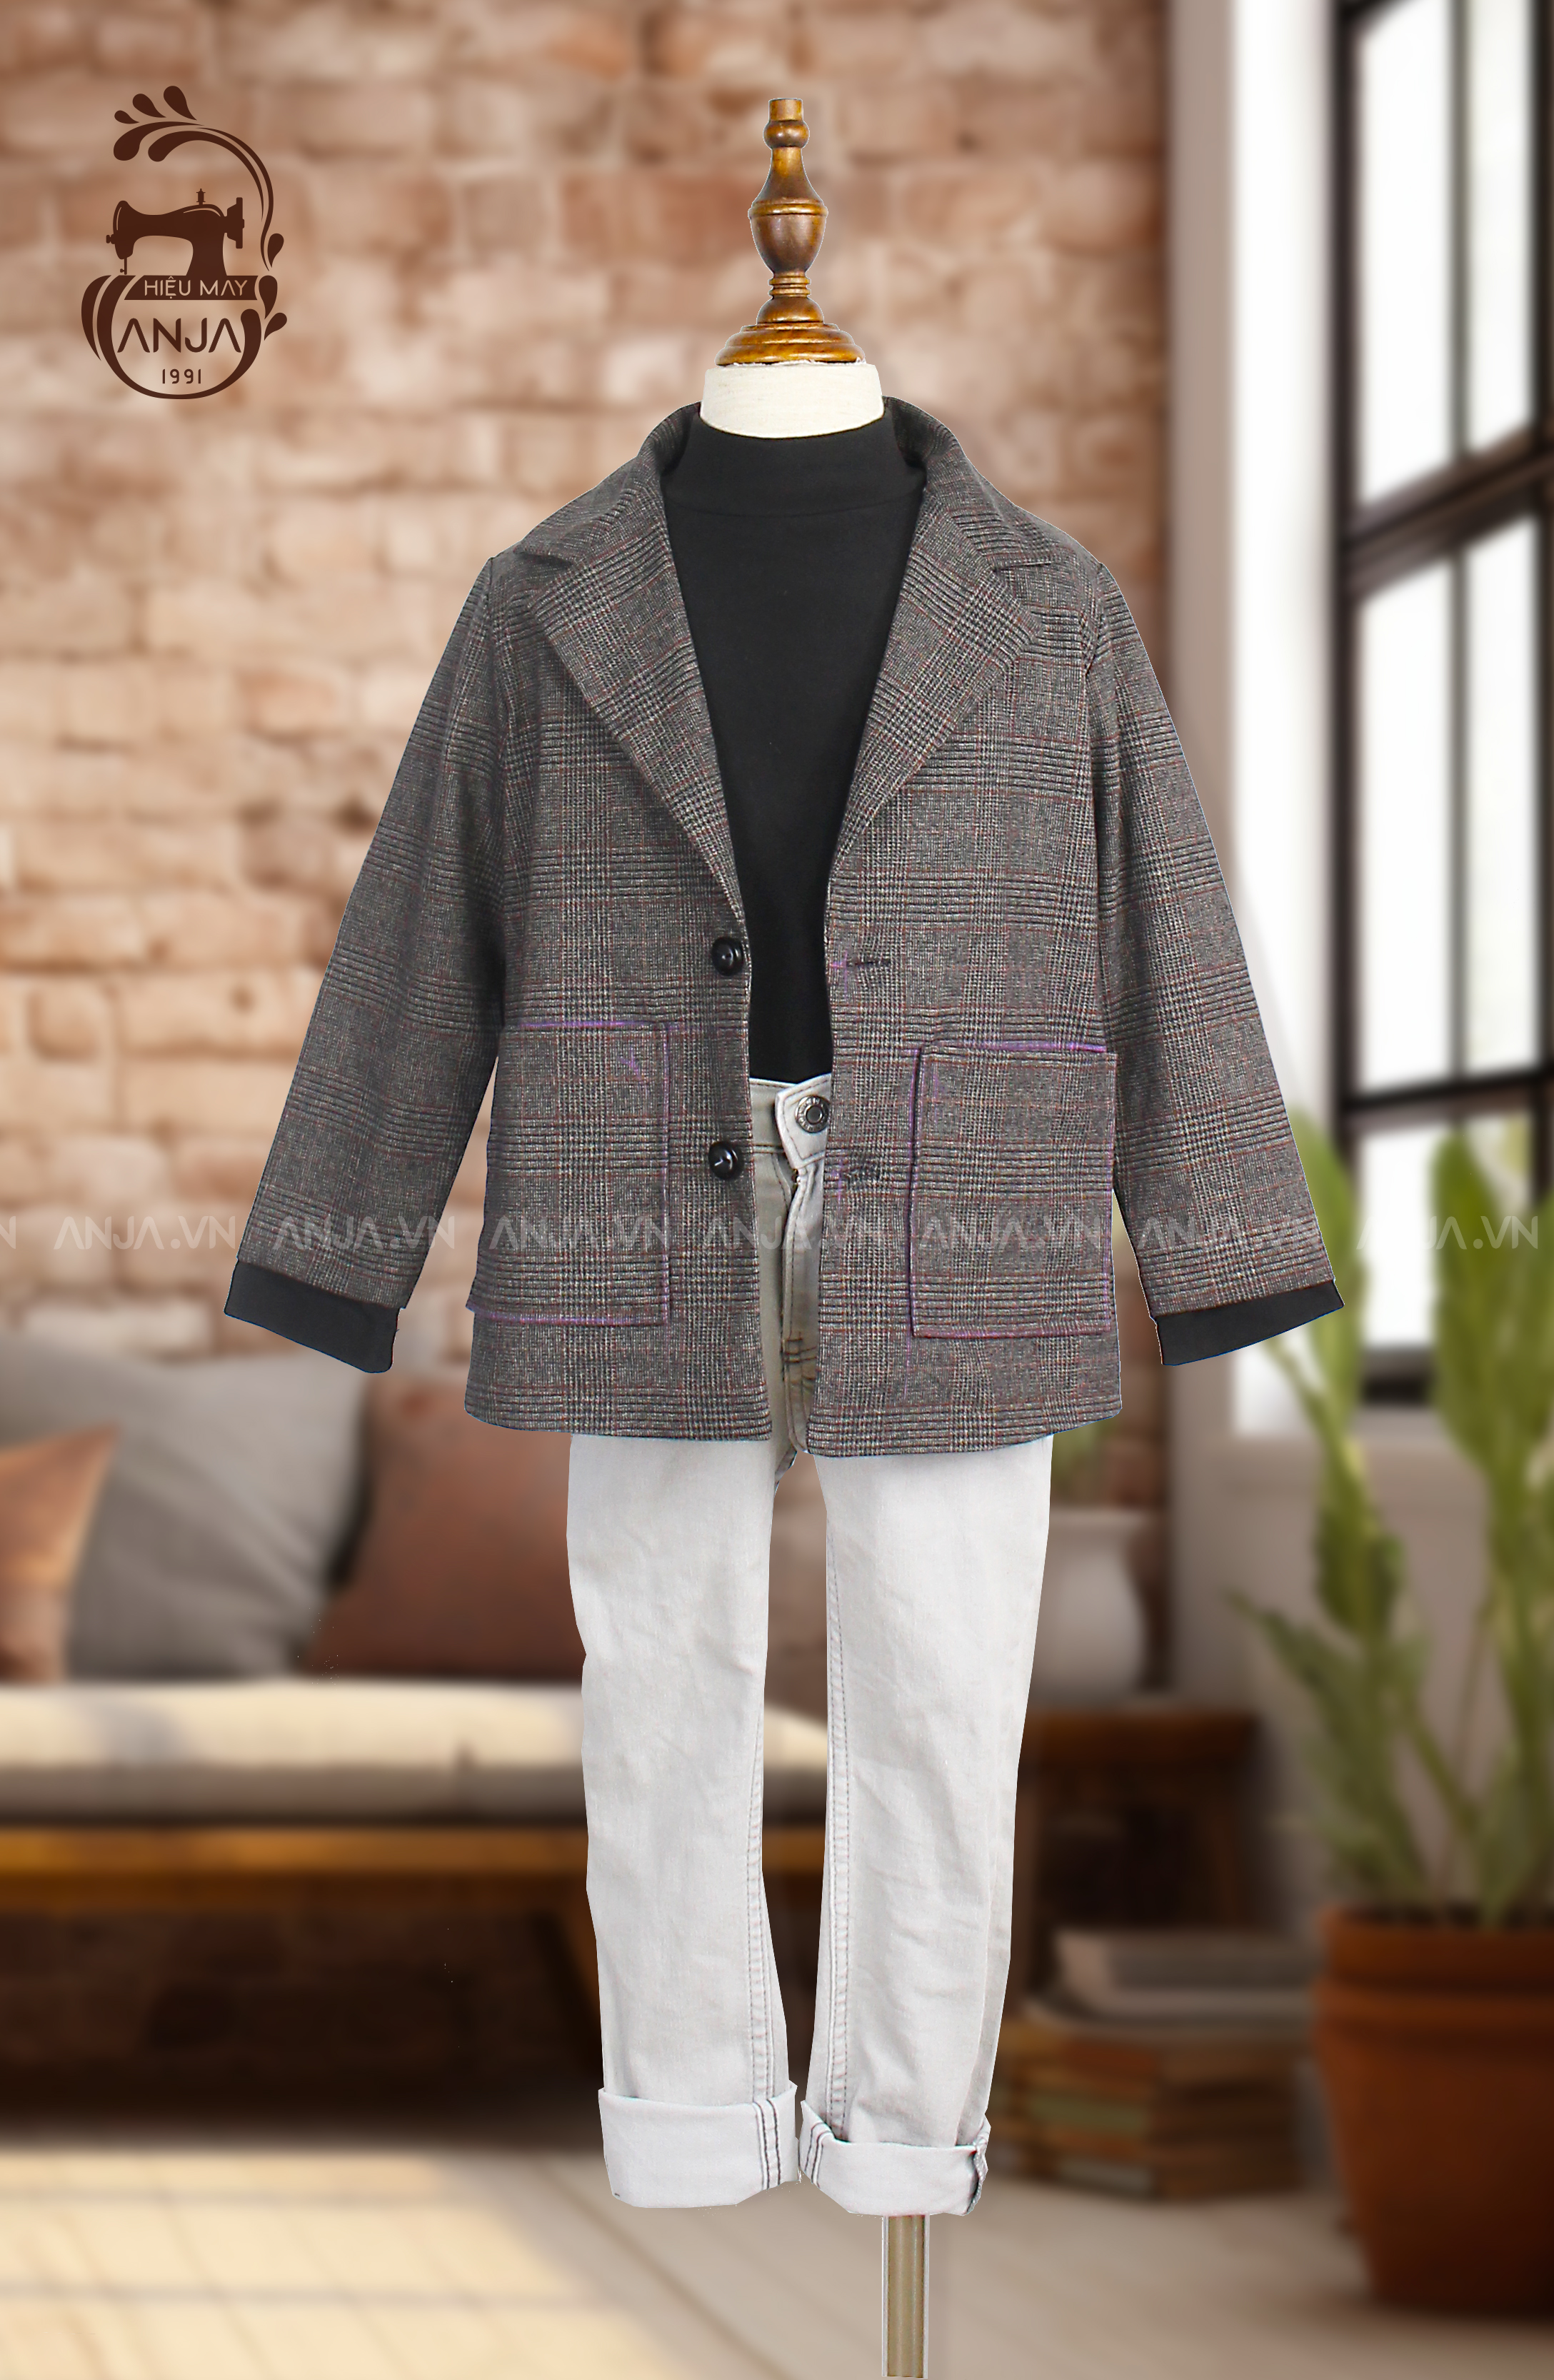 Áo khoác, áo blazer style hàn cho bé trai, không gồm áo thun mặc trong – hieumayanja1991 (Hiệu May ANJA 1991)